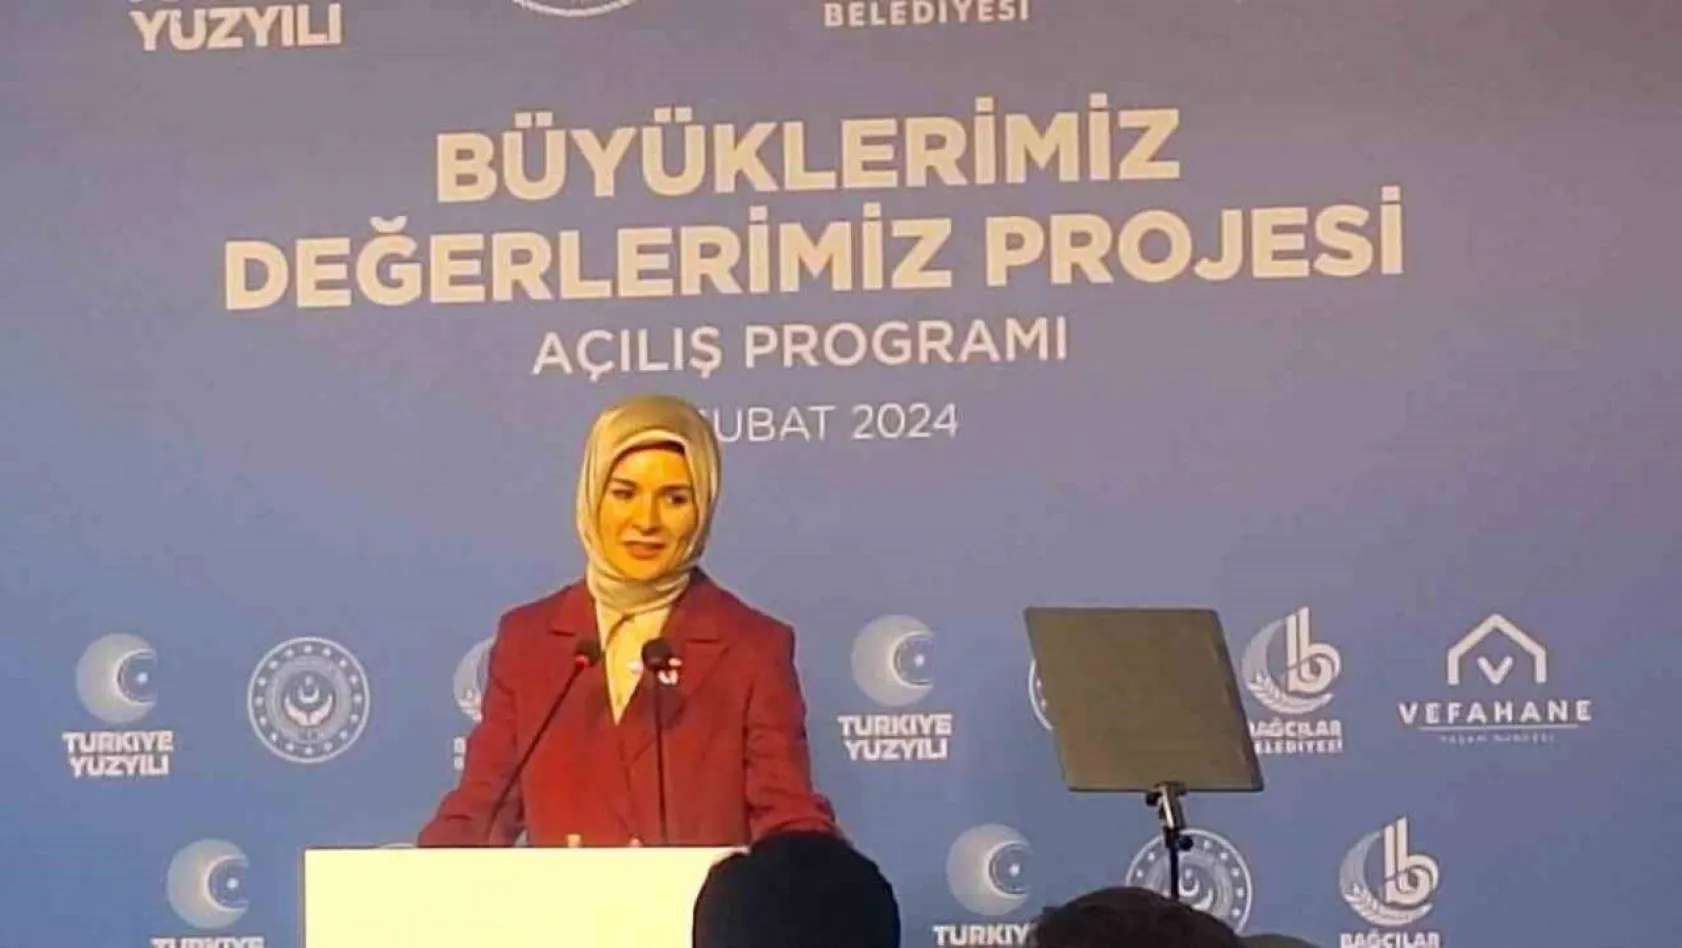 Emine Erdoğan 'Büyüklerimiz Değerlerimiz Projesi'nin tanıtımına katıldı